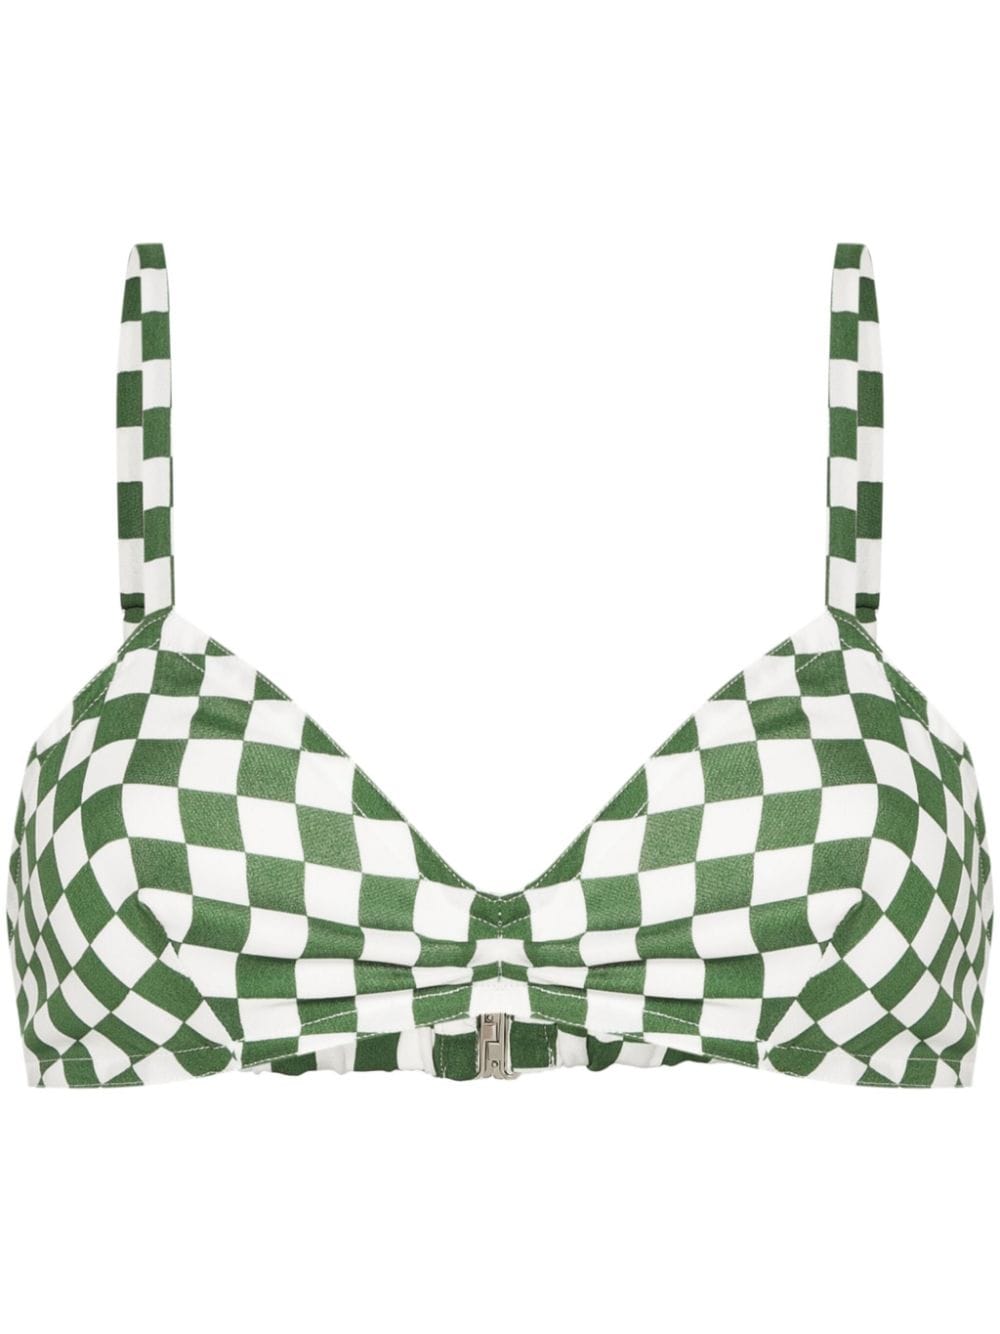 DRIES VAN NOTEN checkboard-print bra top - Green